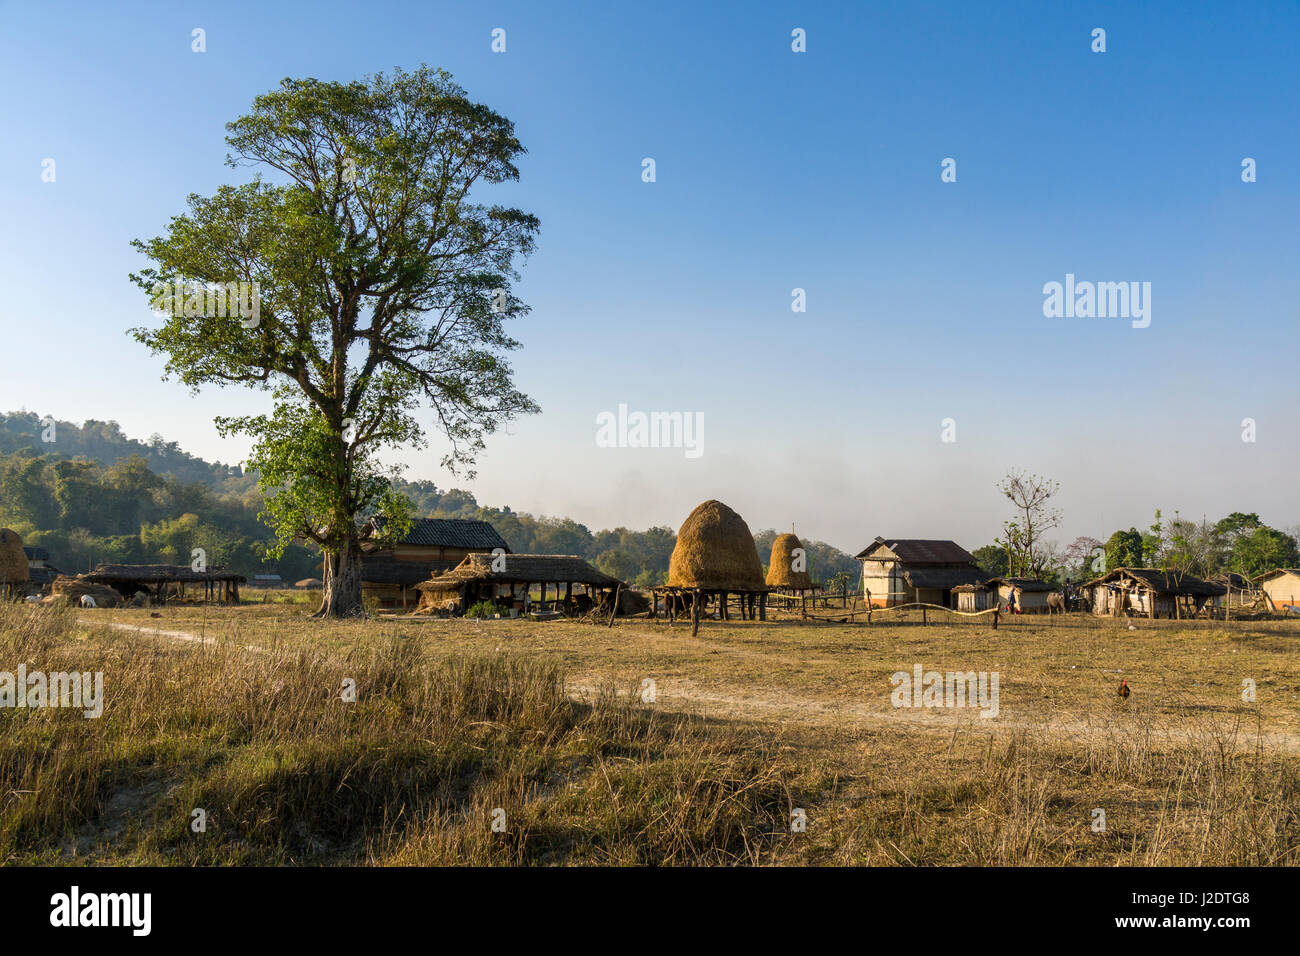 Il paesaggio agricolo con tipiche case coloniche nel villaggio pandavnagar in Chitwan il parco nazionale Foto Stock